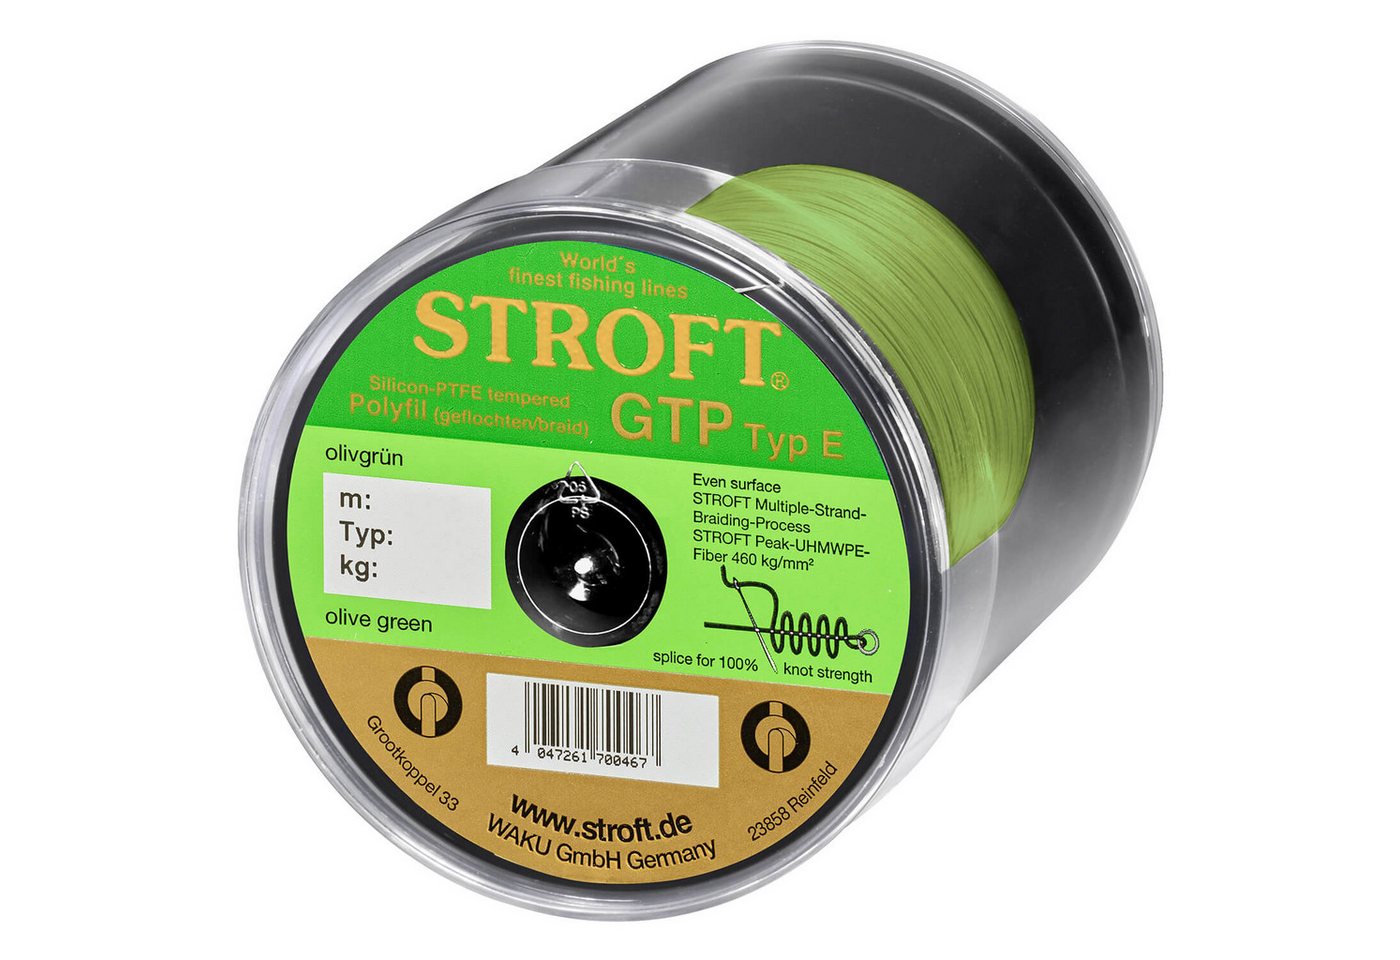 Stroft Angelschnur Stroft Schnur GTP Typ E geflochten olivgrün 500m, 500 m Länge, 0.13 mm Fadendurchmesser, (1-St), 4,25kg Tragkraft von Stroft